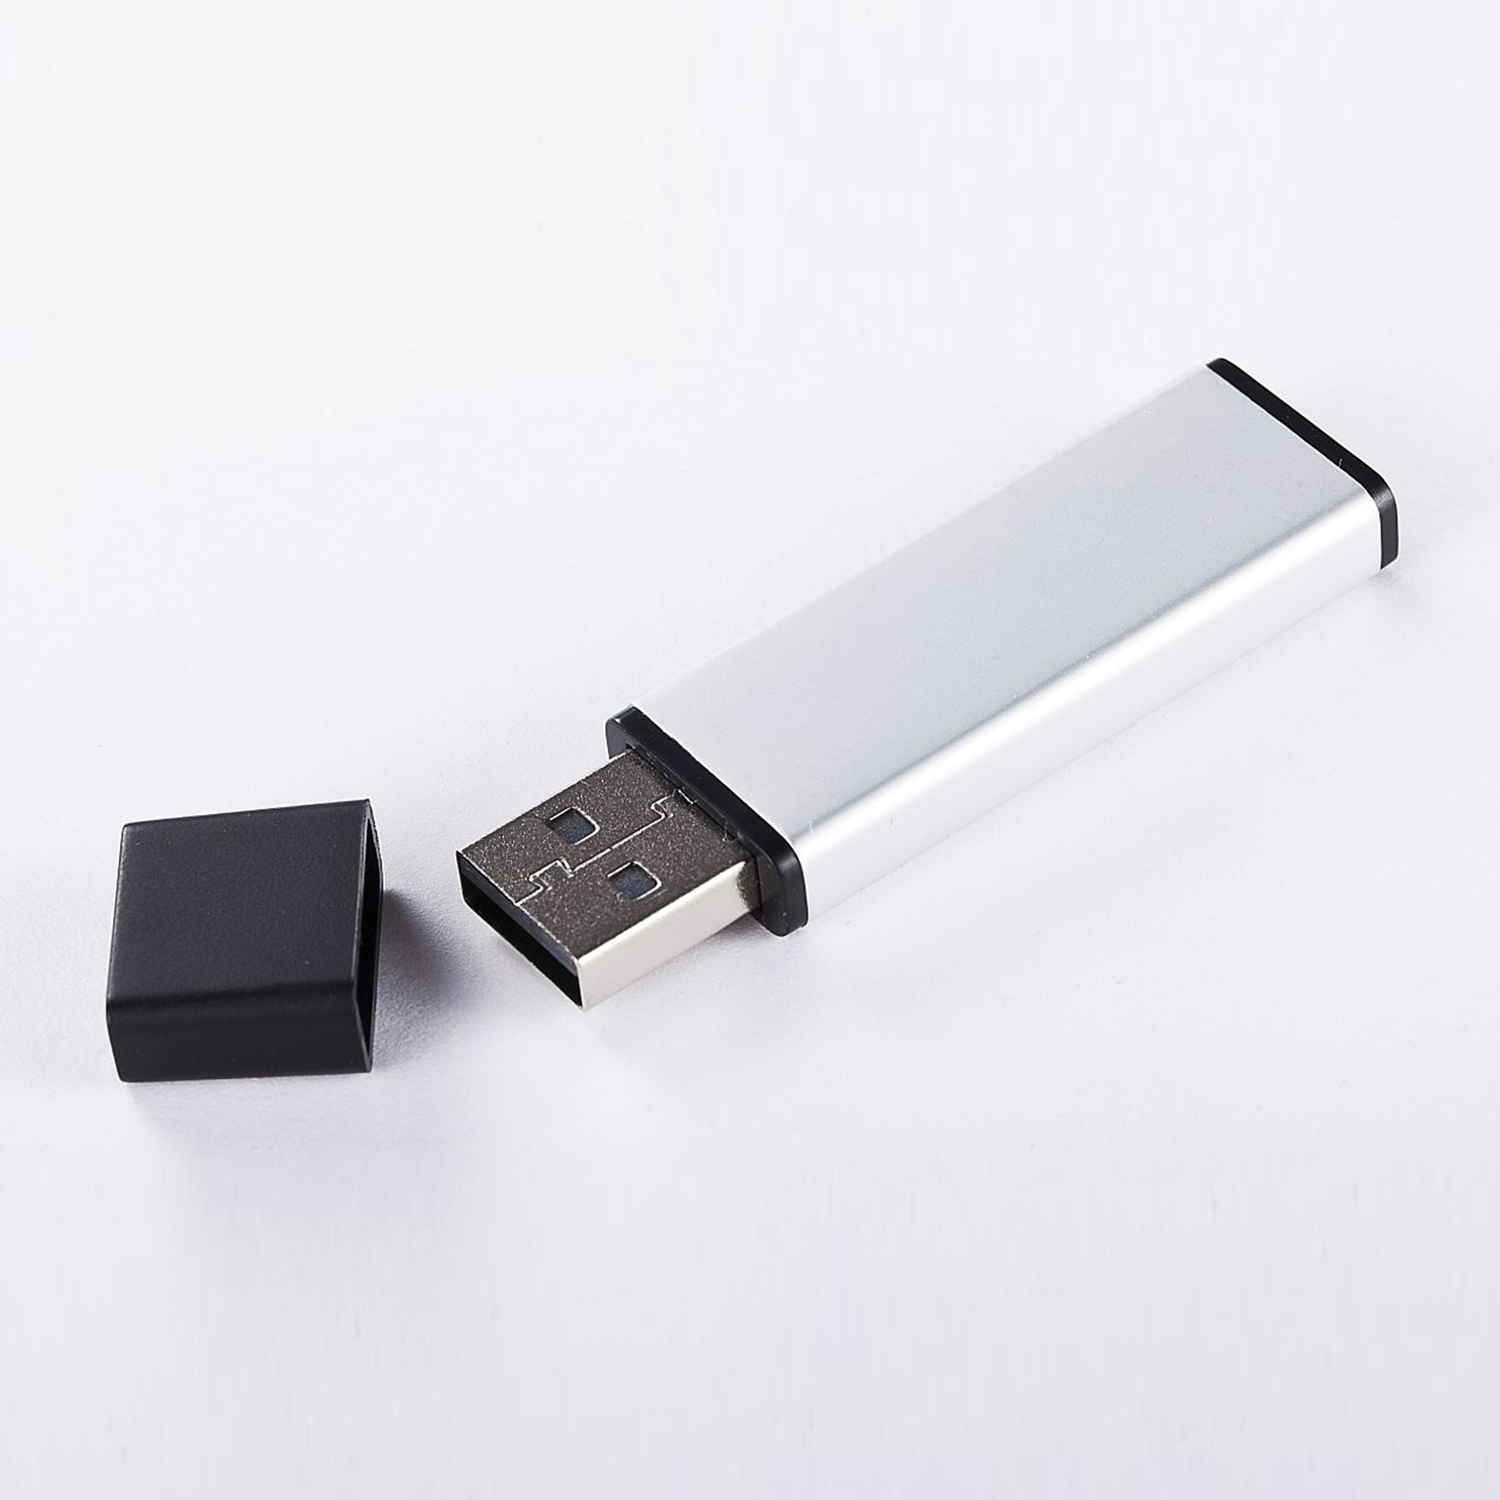 XLYNE USB 2.0 - 16 Stick GB) (ALUMINIUM, USB GB 16